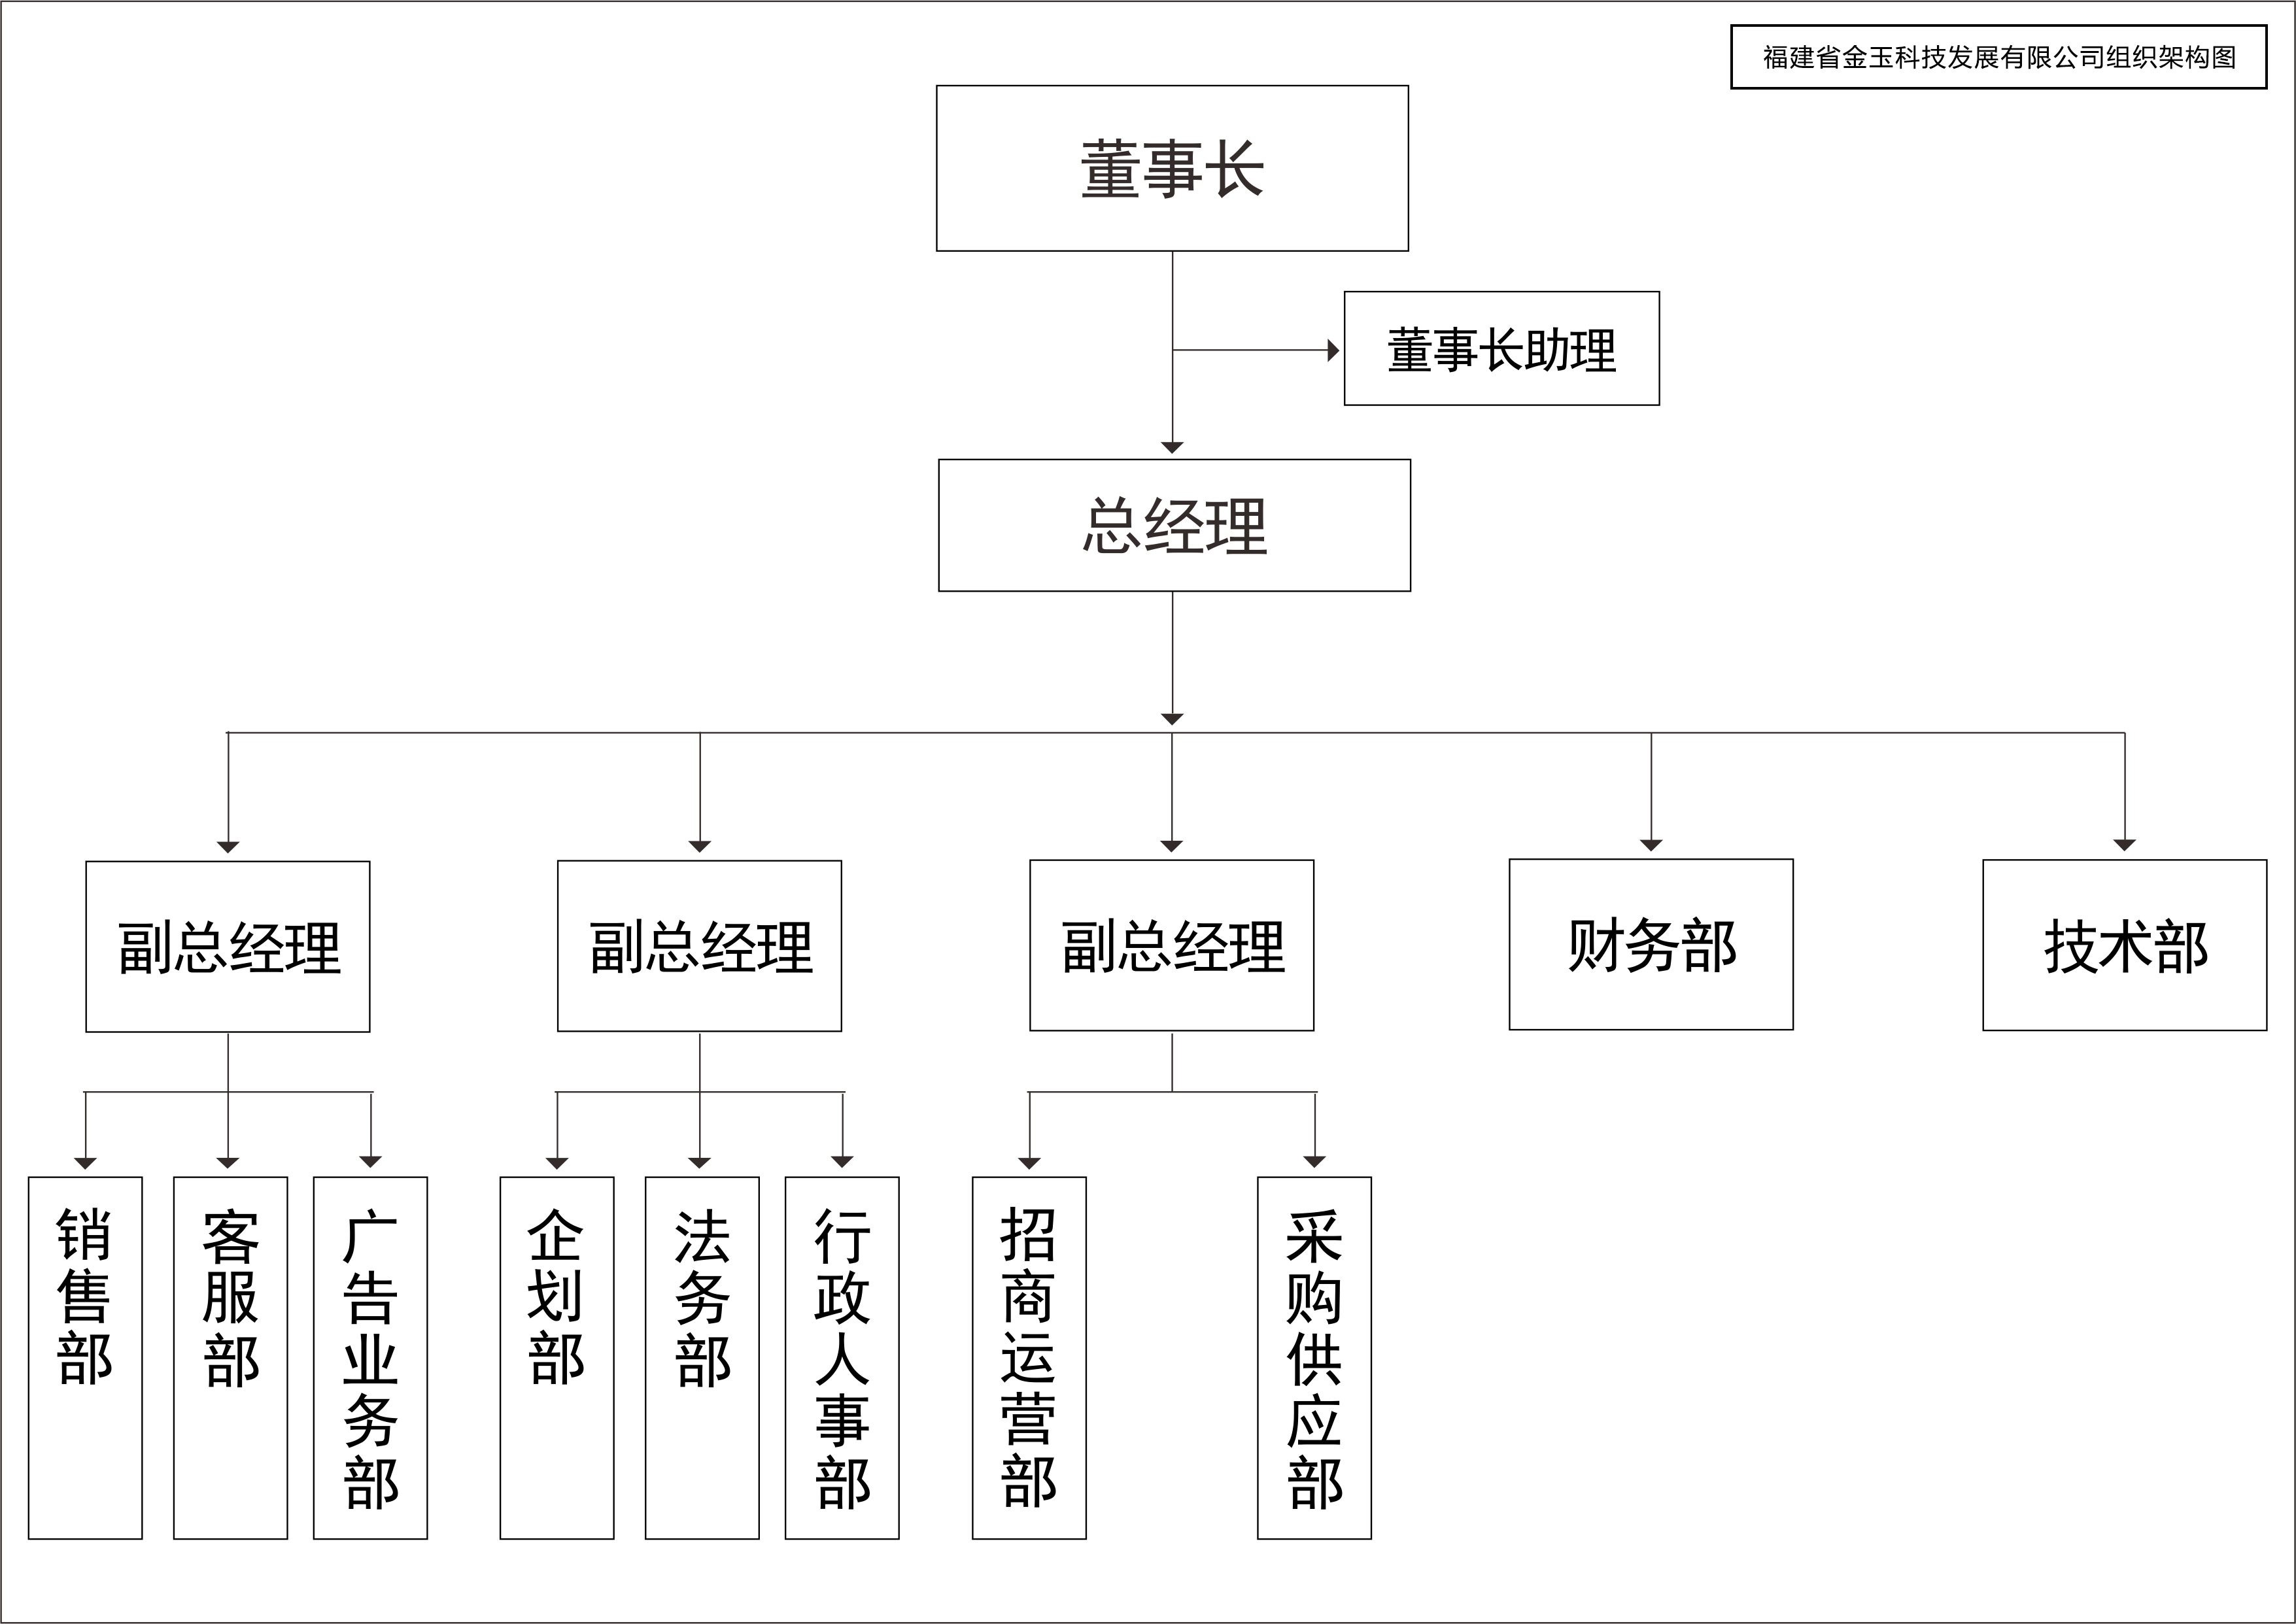 9月组织架构图.png